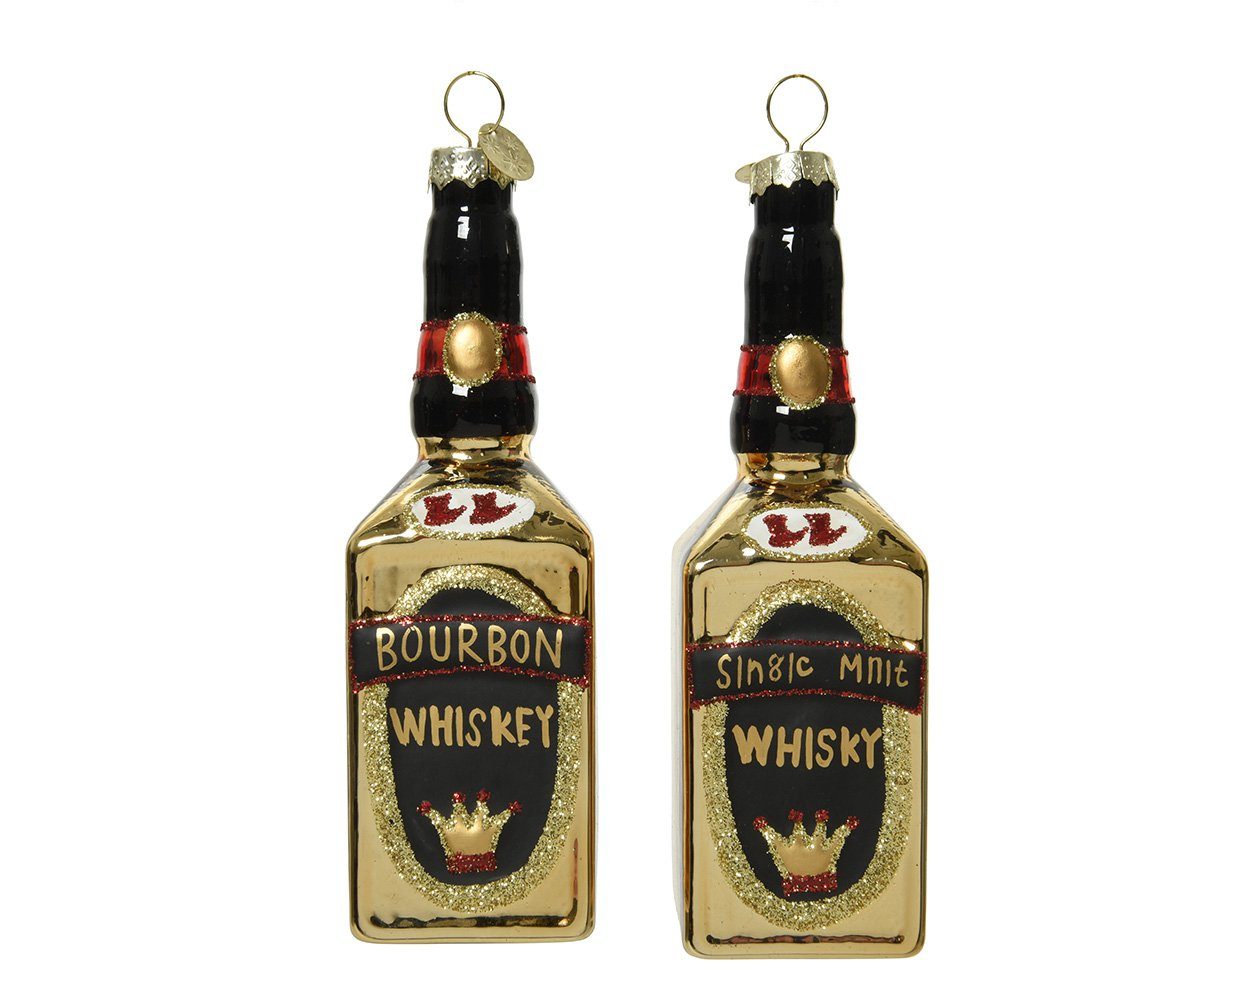 Decoris season decorations Christbaumschmuck, Christbaumschmuck Glas Bourbon / Whiskey 14cm gold, 1 Stück sortiert